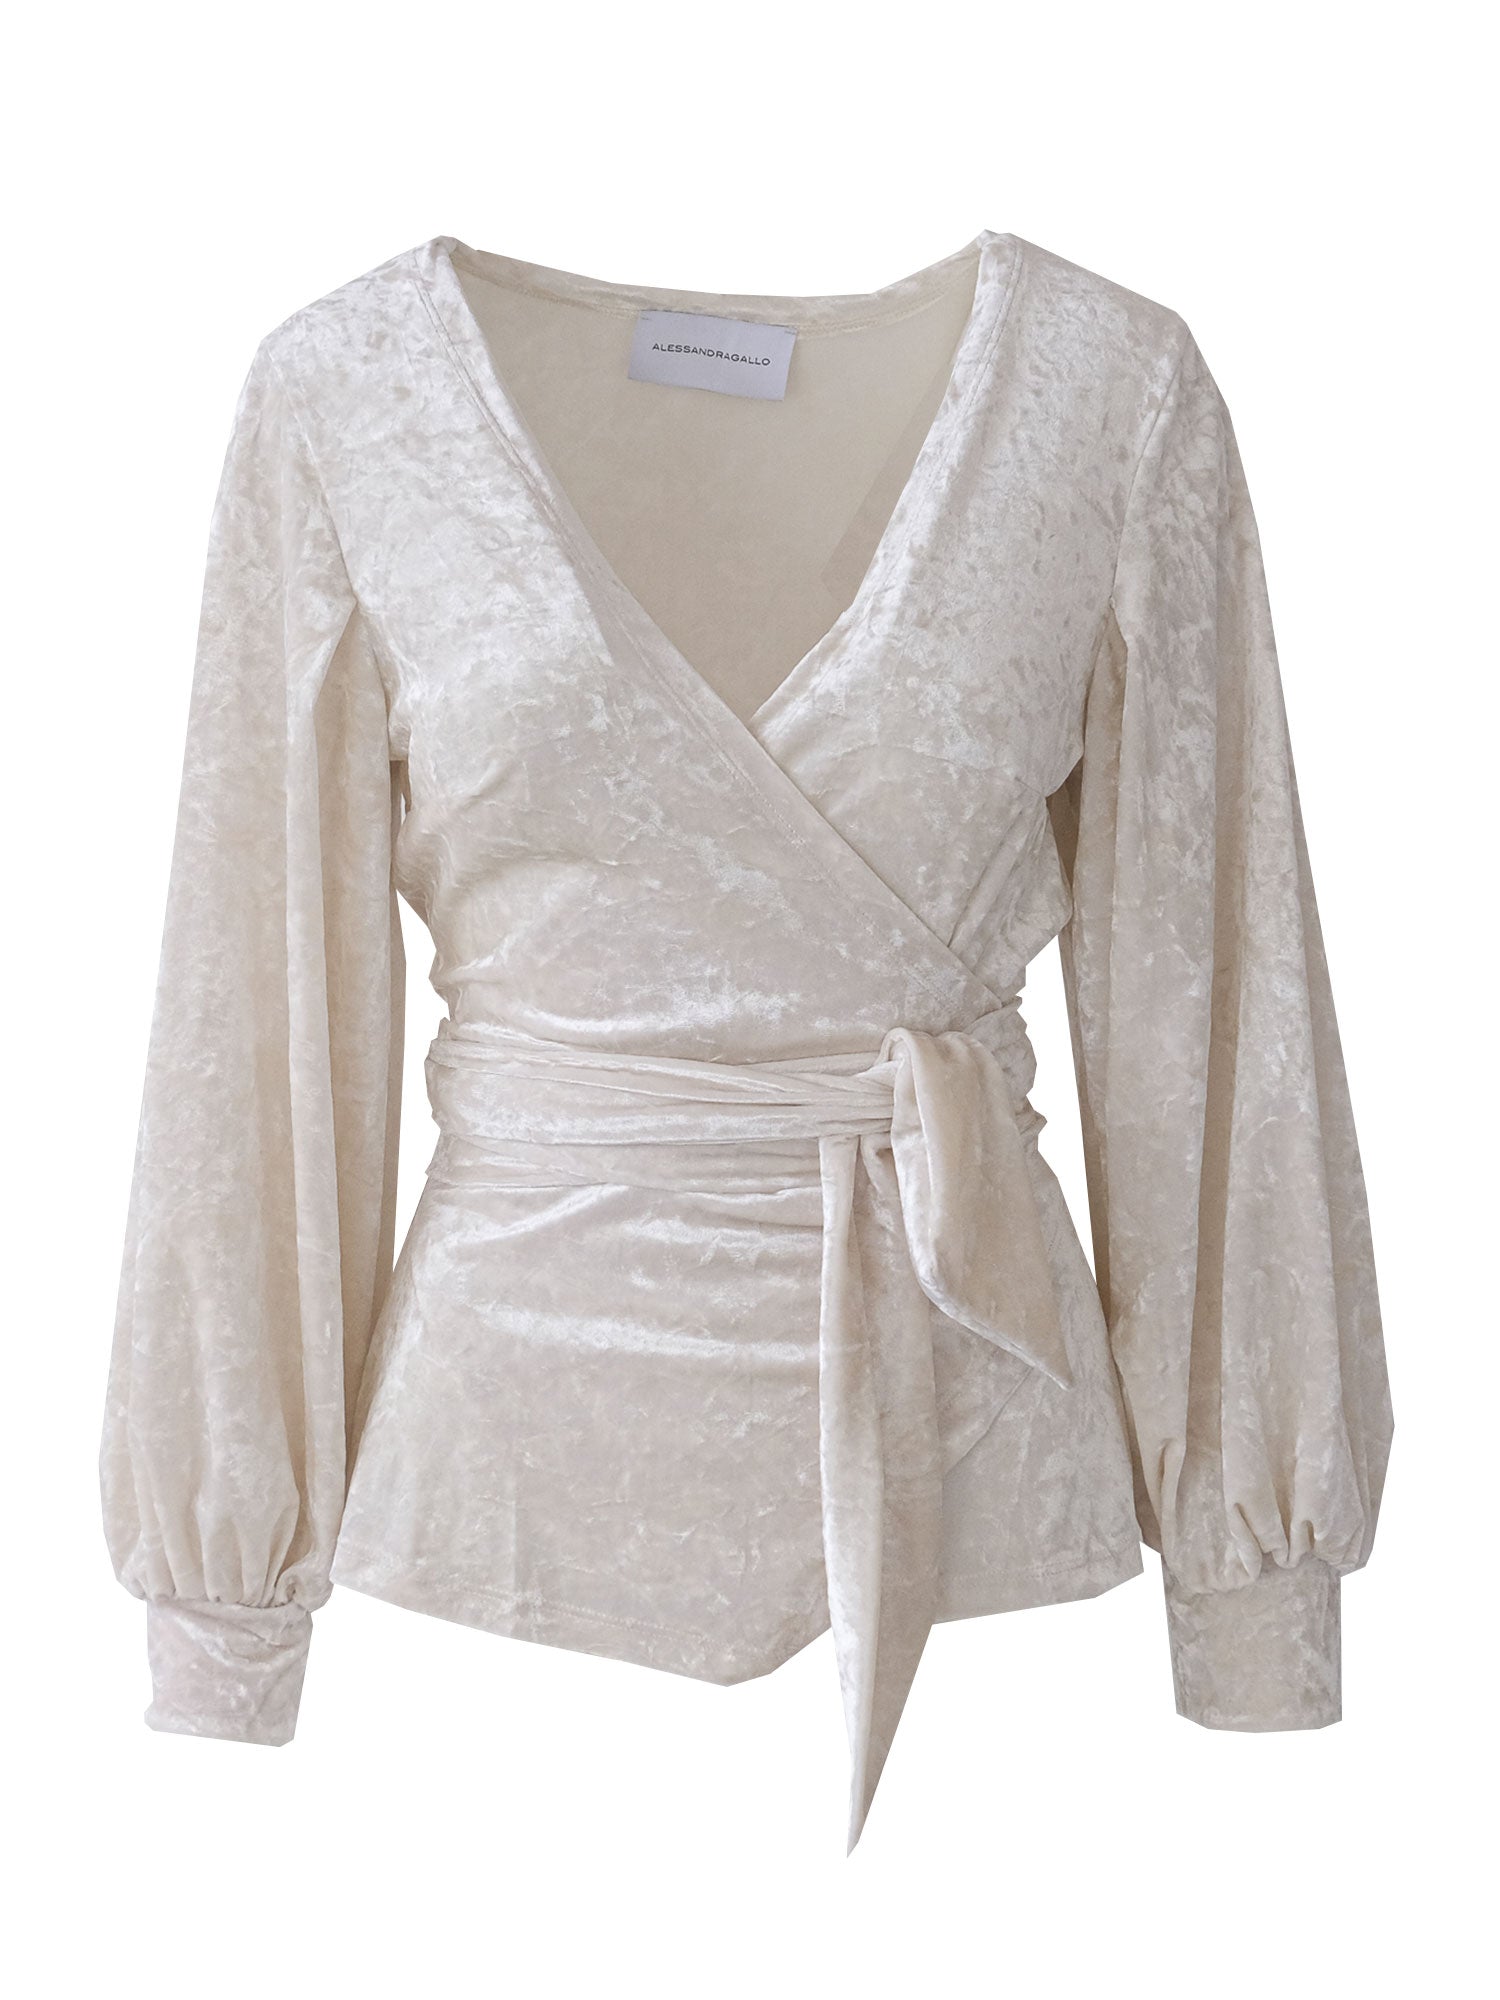 CLOE - kimono blouse in cream hammered chenille